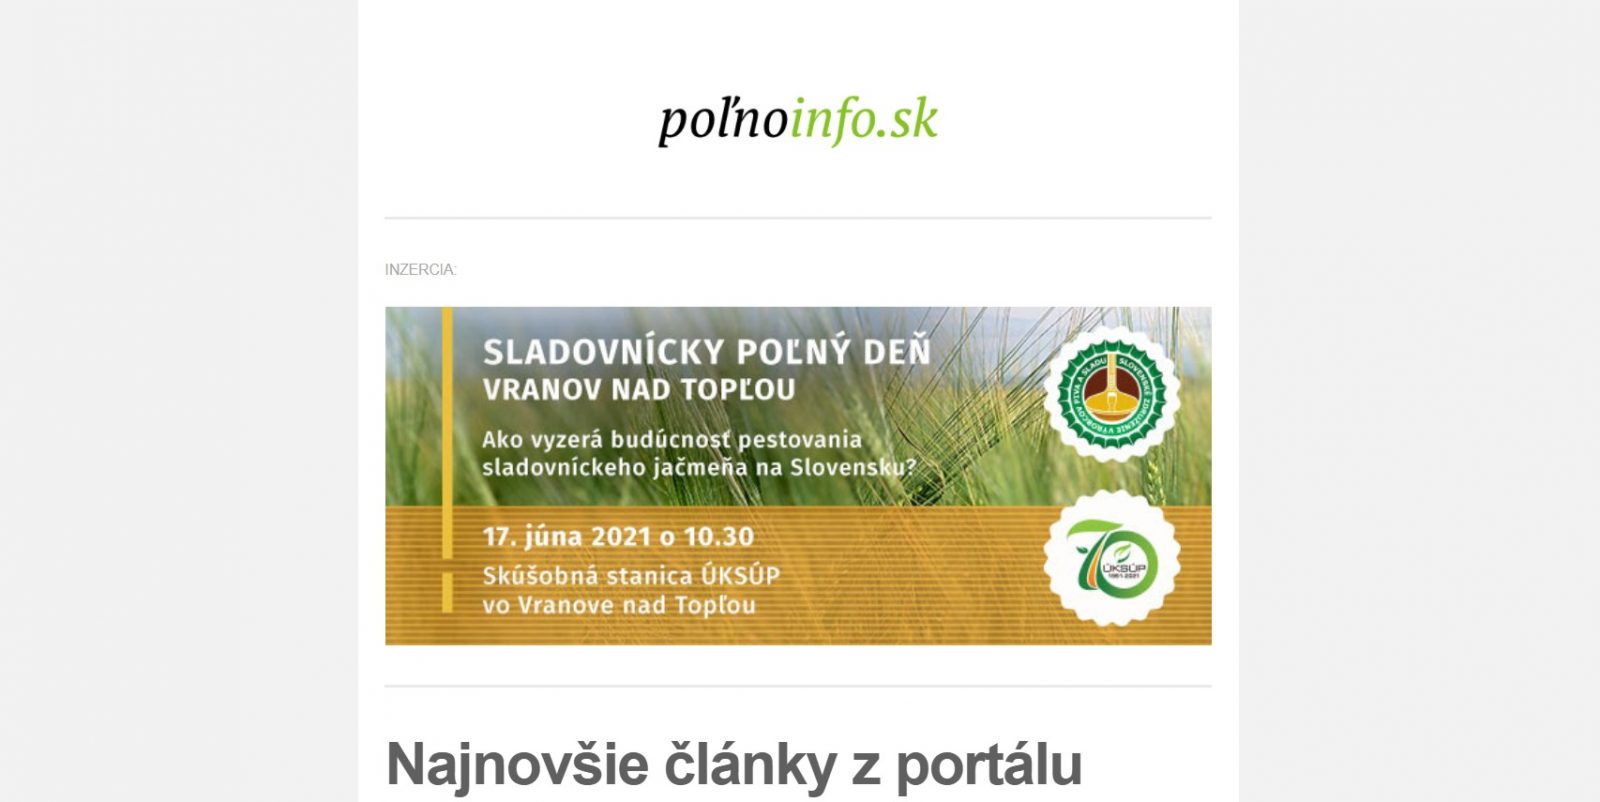 Polnoinfo.sk: Ako publikovať reklamný baner v newslettri (Staré! Aktualizuj!)